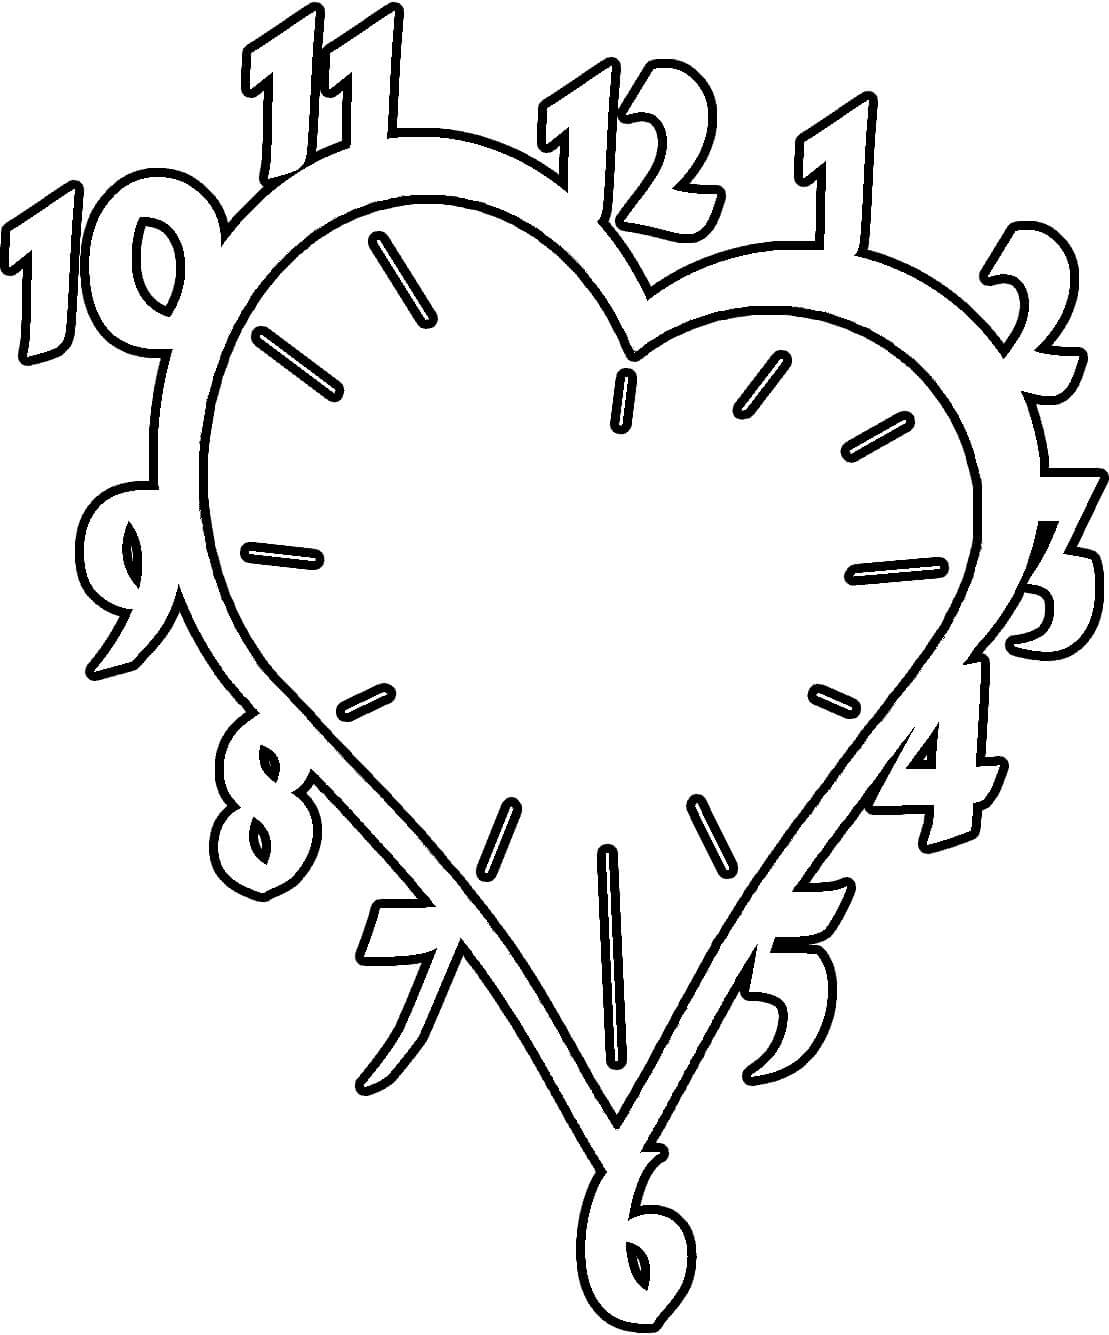 Horloge Coeur coloring page